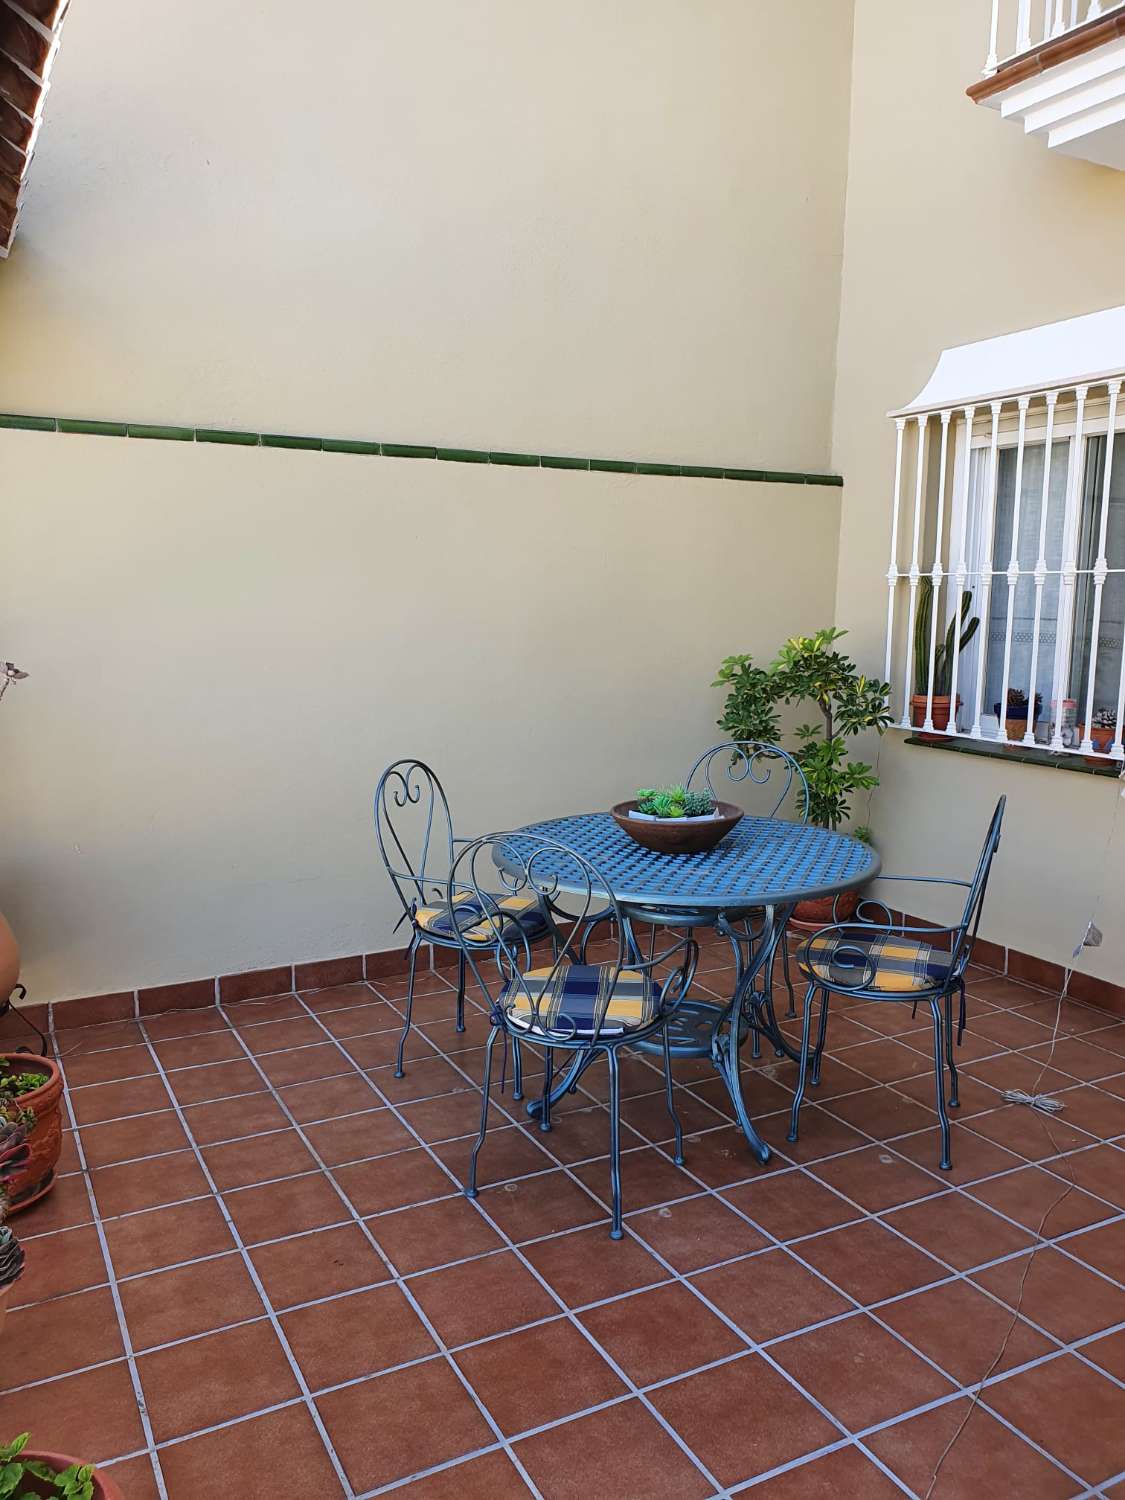 Продается отличный двухквартирный дом в Торре-дель-Мар.